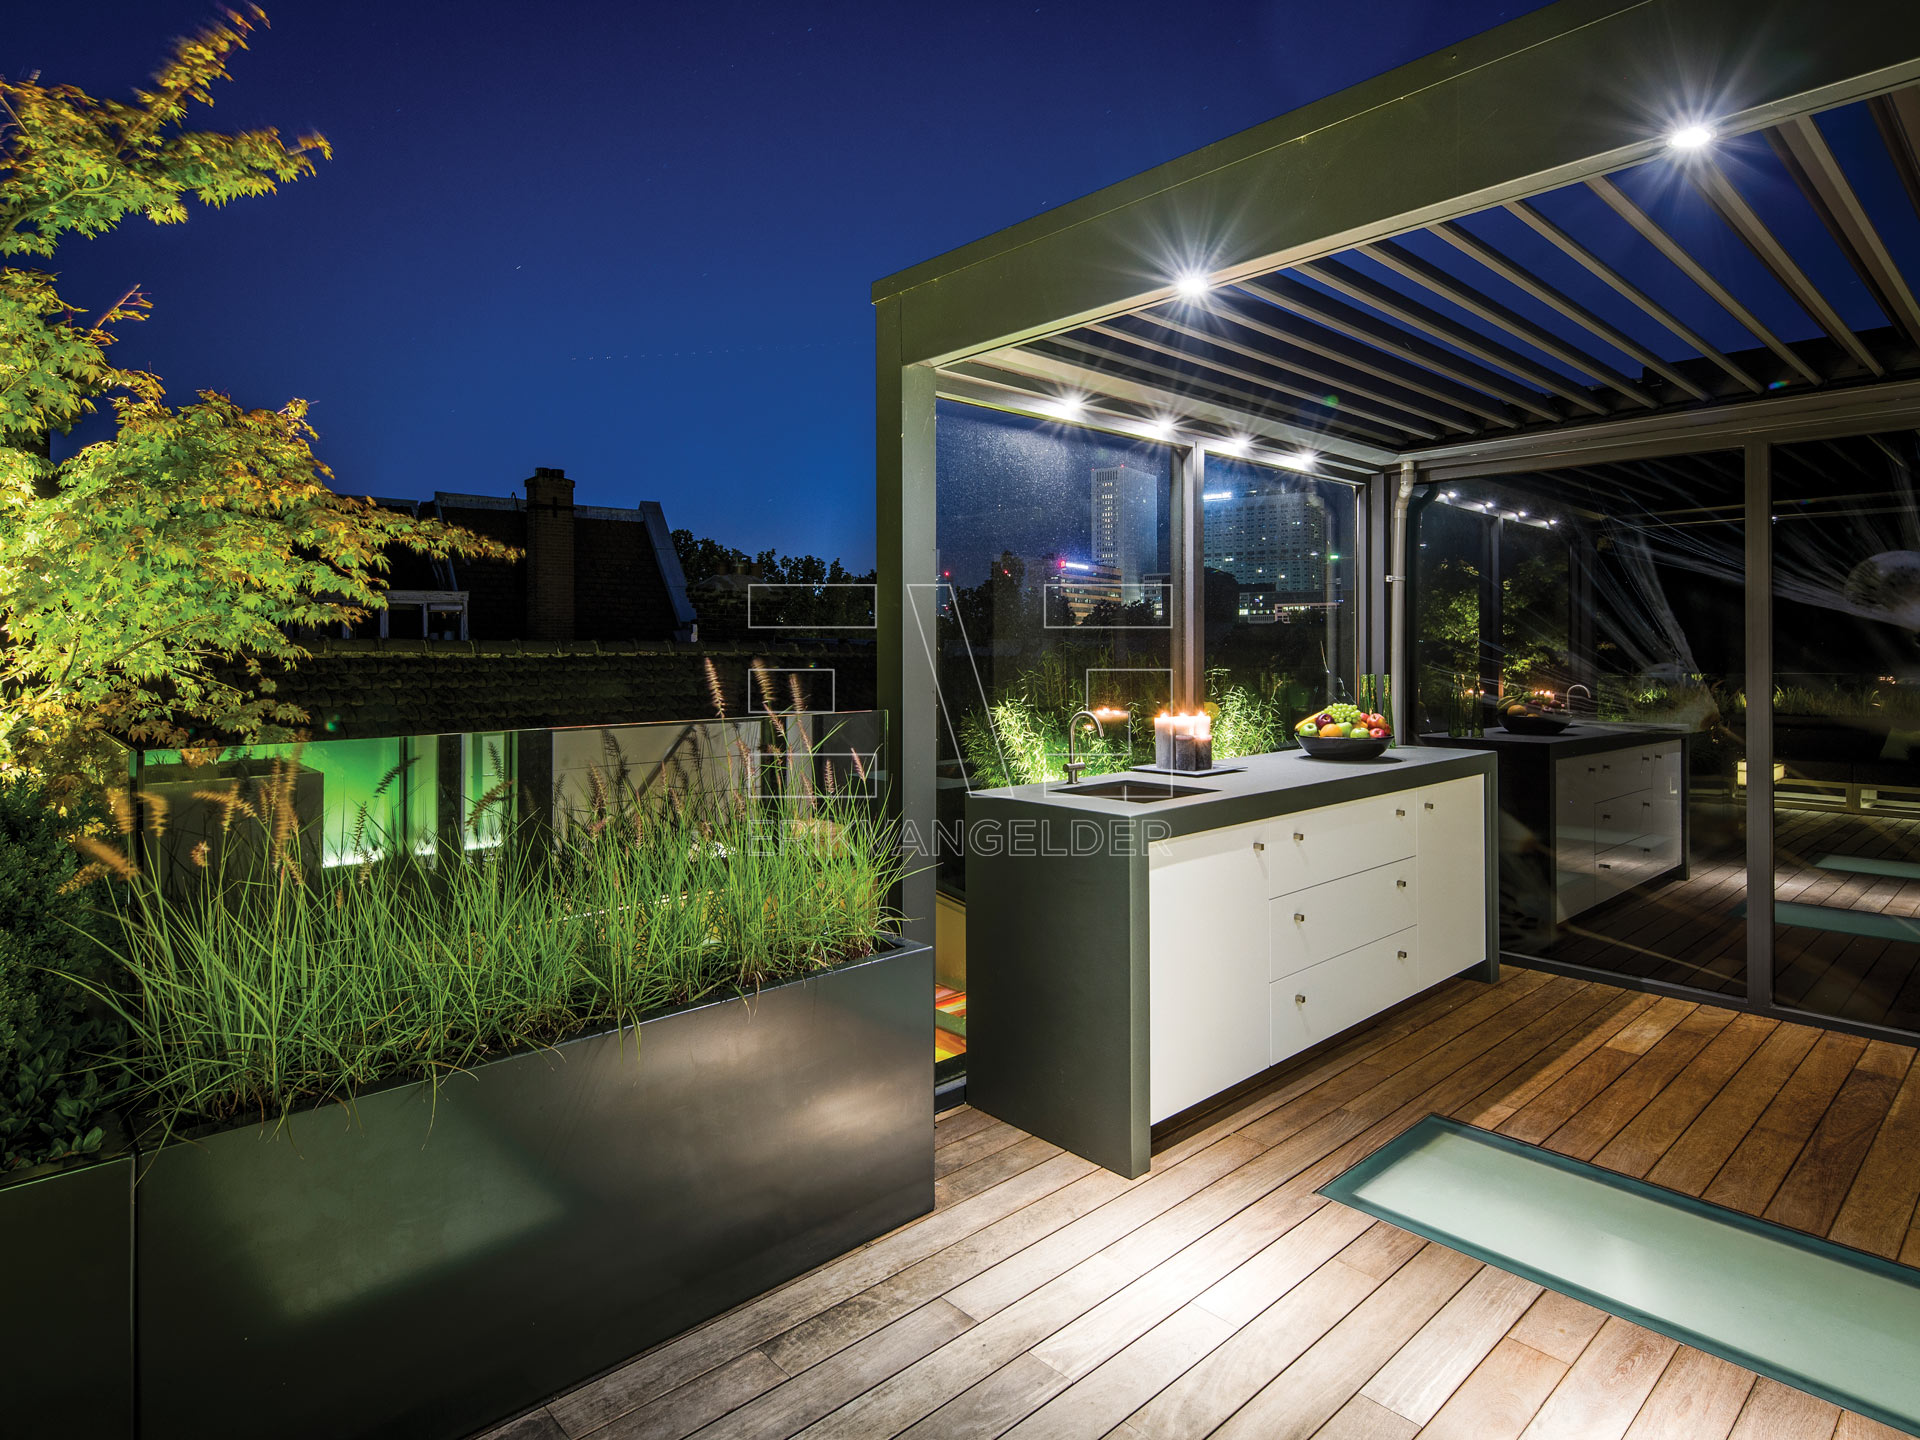 Luxe overkapping met verlichting en moderne buitenkeuken daktuin erikvangelder tuindesign exclusive gardendesign luxury sfeervol